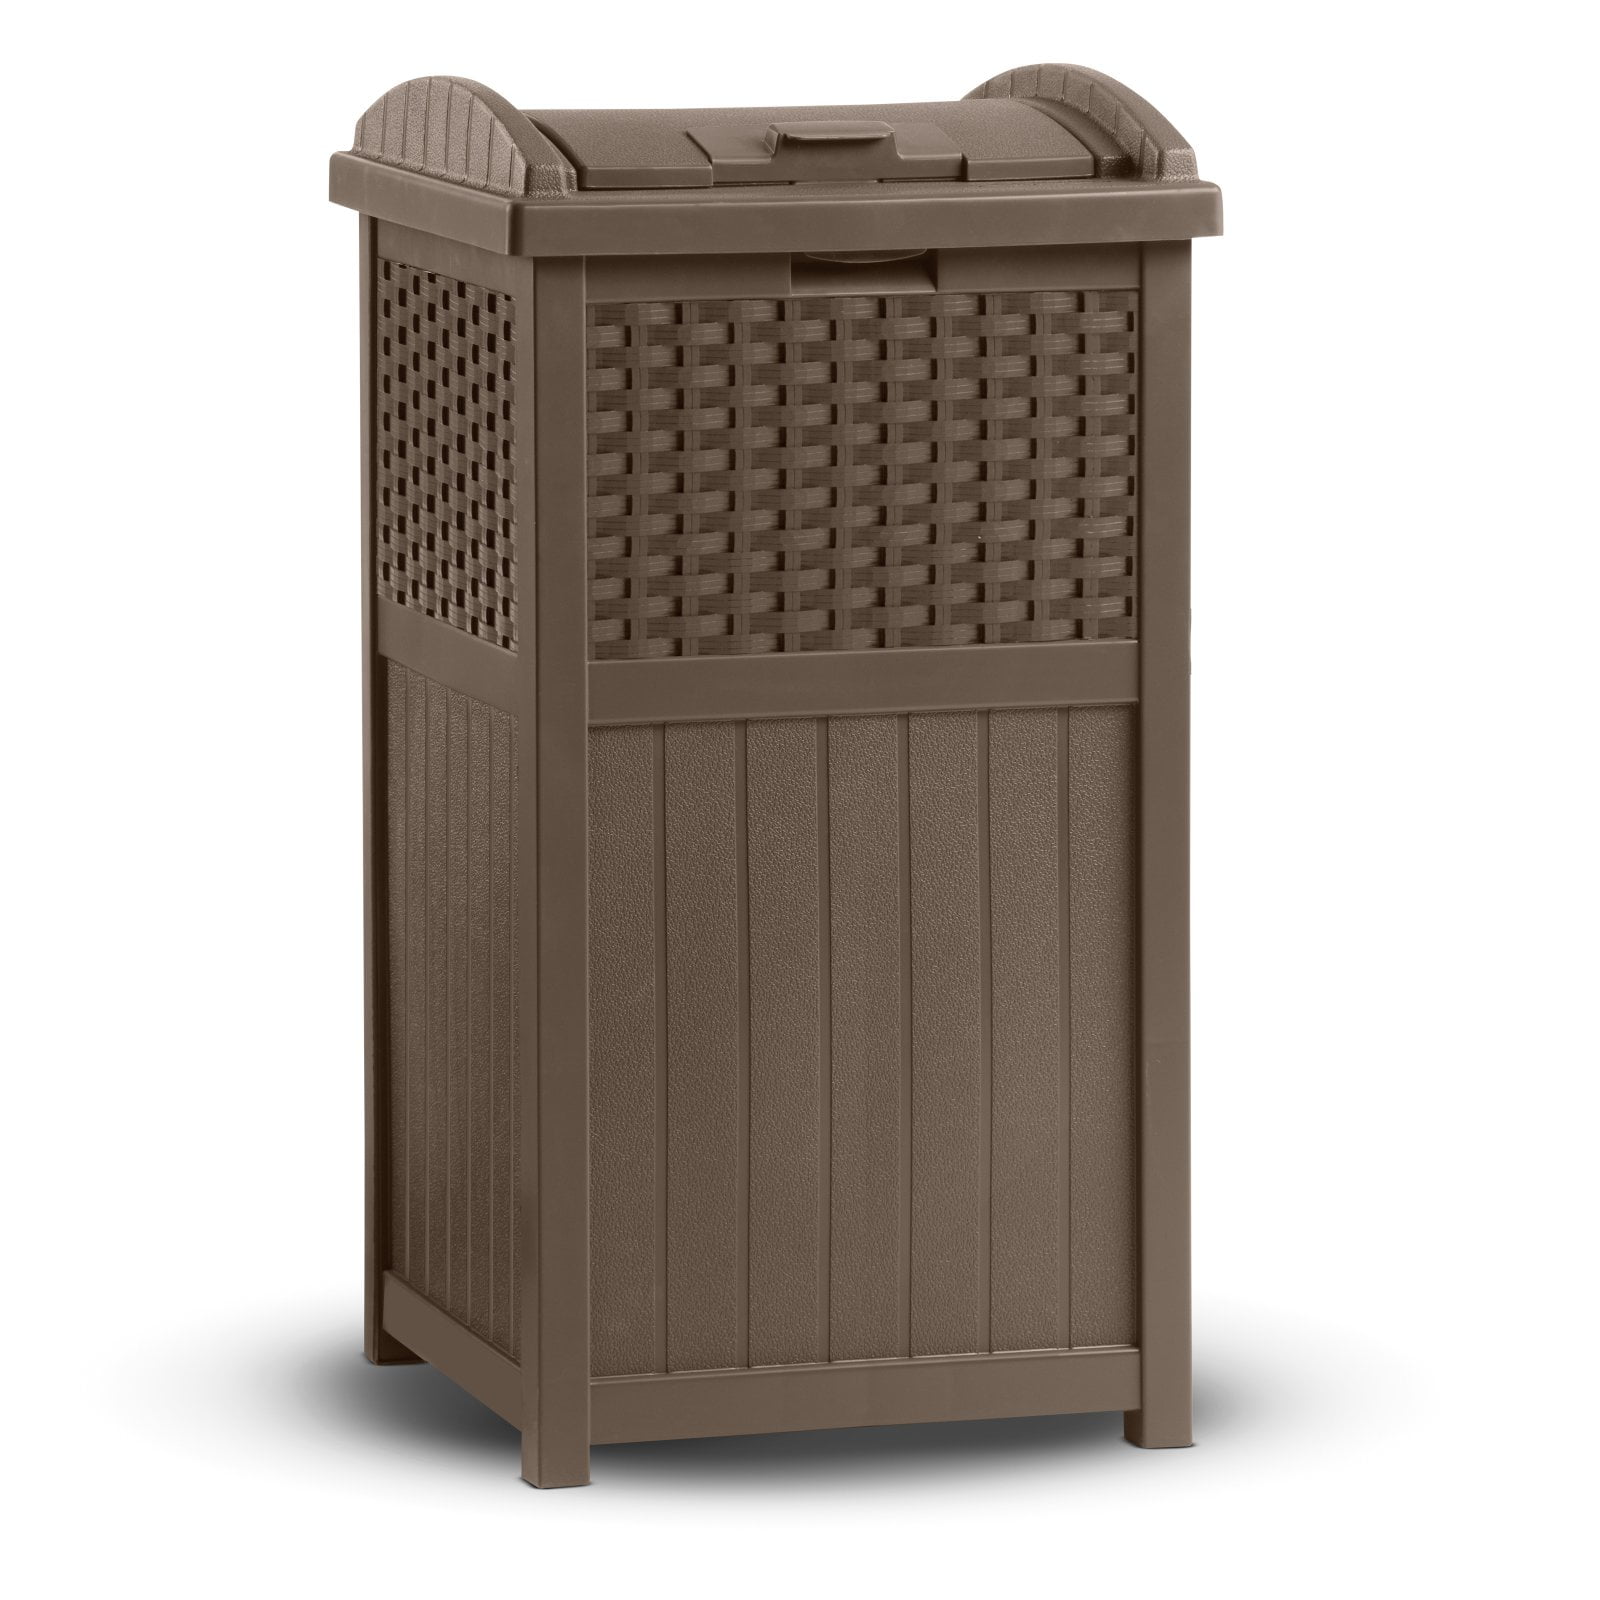 Suncast Trashcan Hideaway Outdoor 33 Gallon Garbage Trash Waste